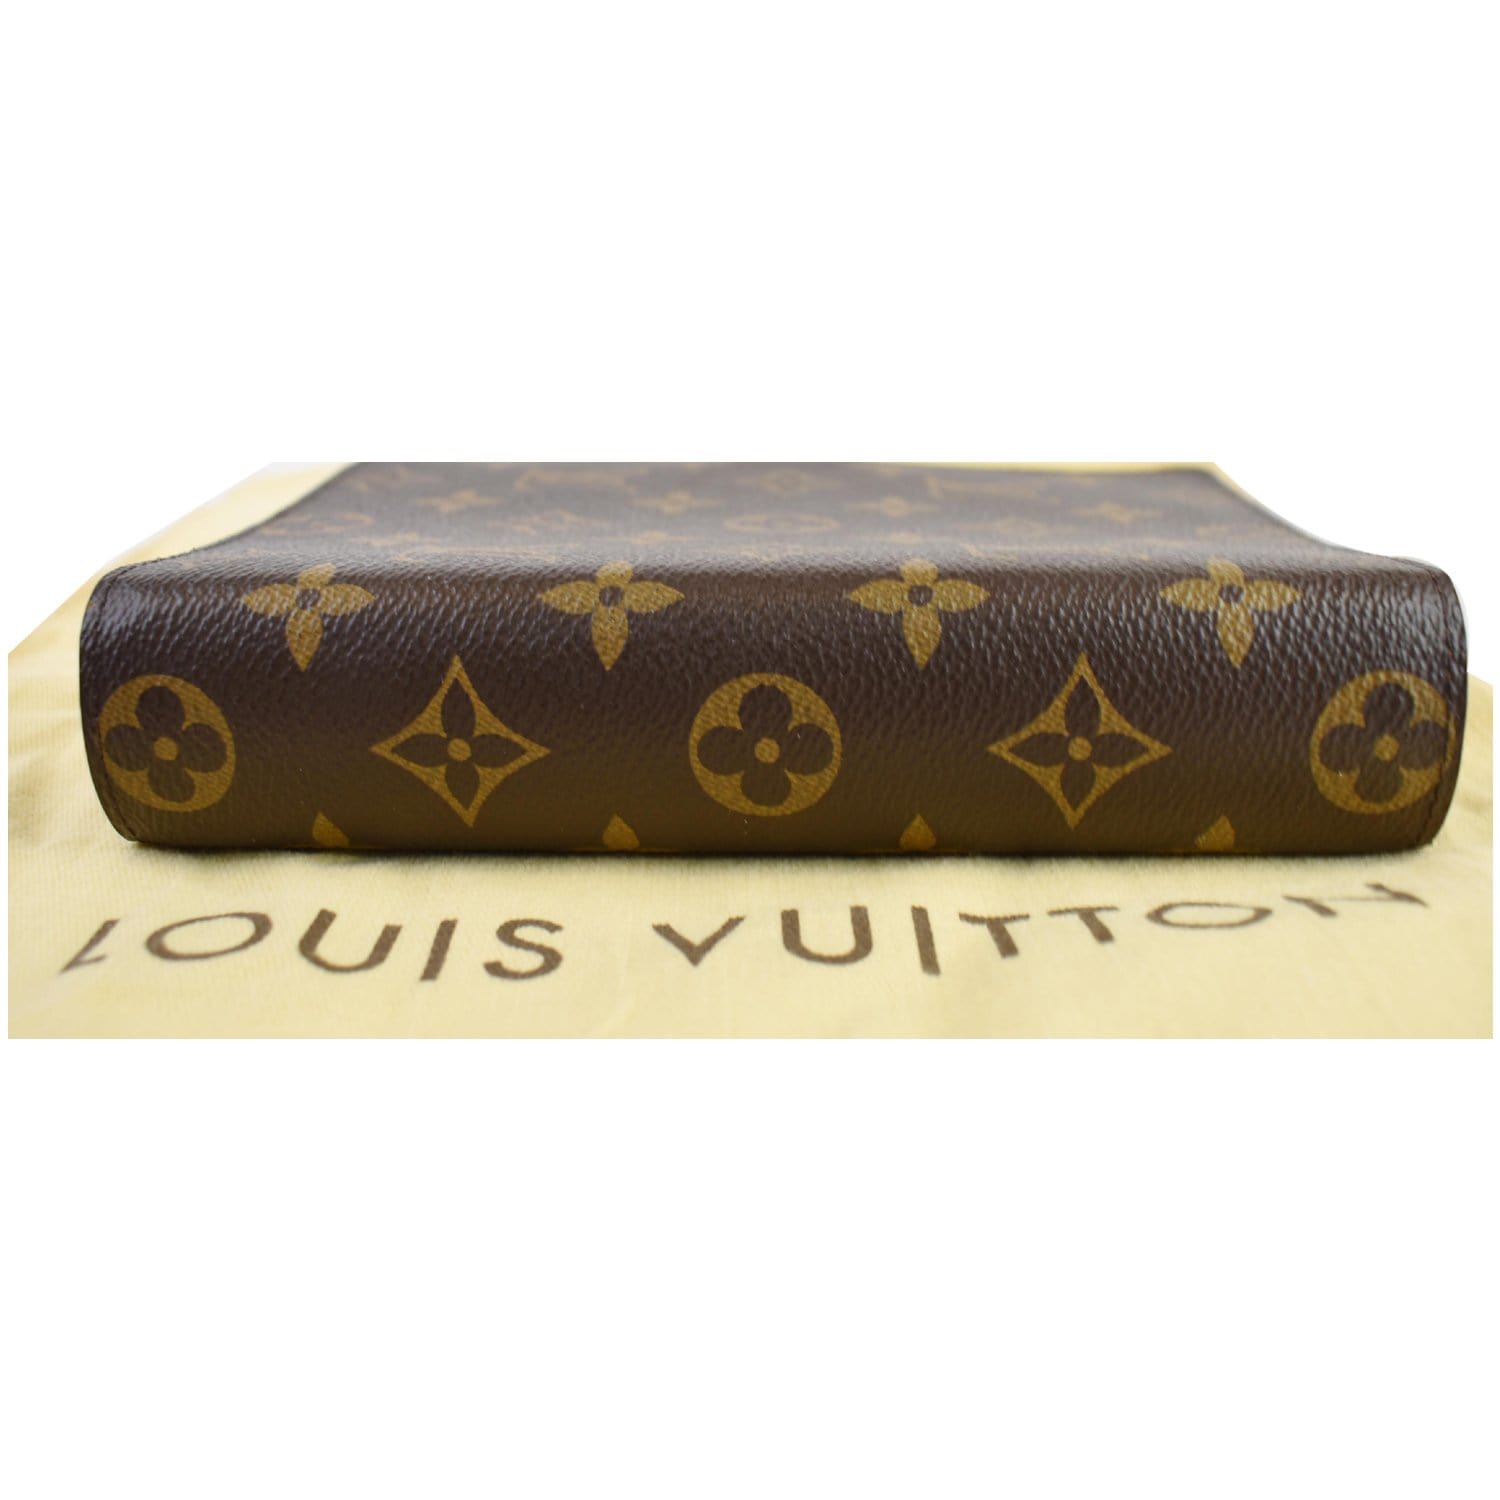 Louis Vuitton, Office, Authentic Louis Vuitton Mm Size Agenda